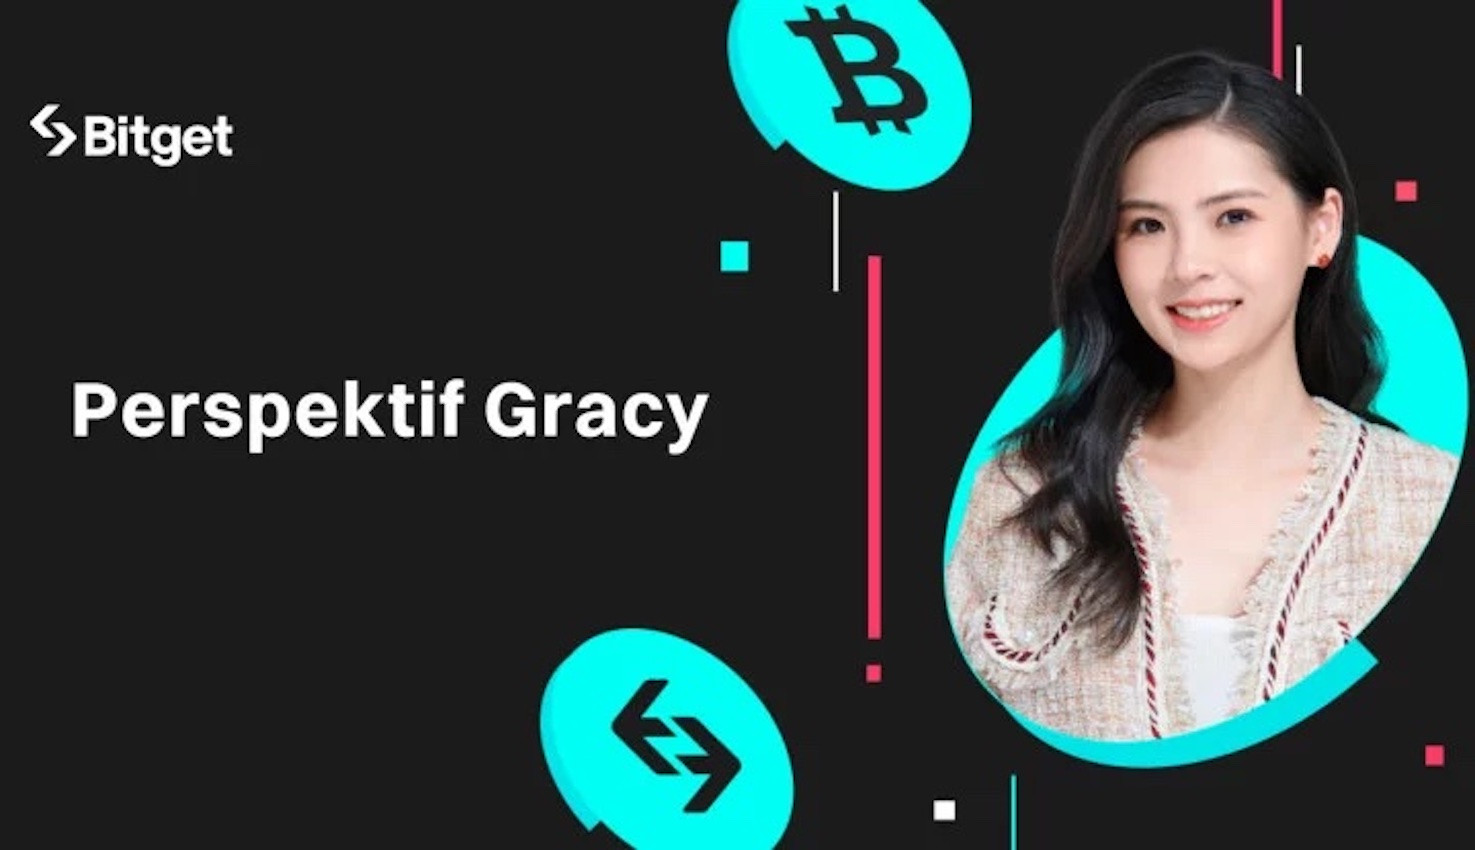 Dirut Bitget Gracy Chen Berbagi Tips untuk Membangun Tim Kripto yang Beragam dan Inklusif